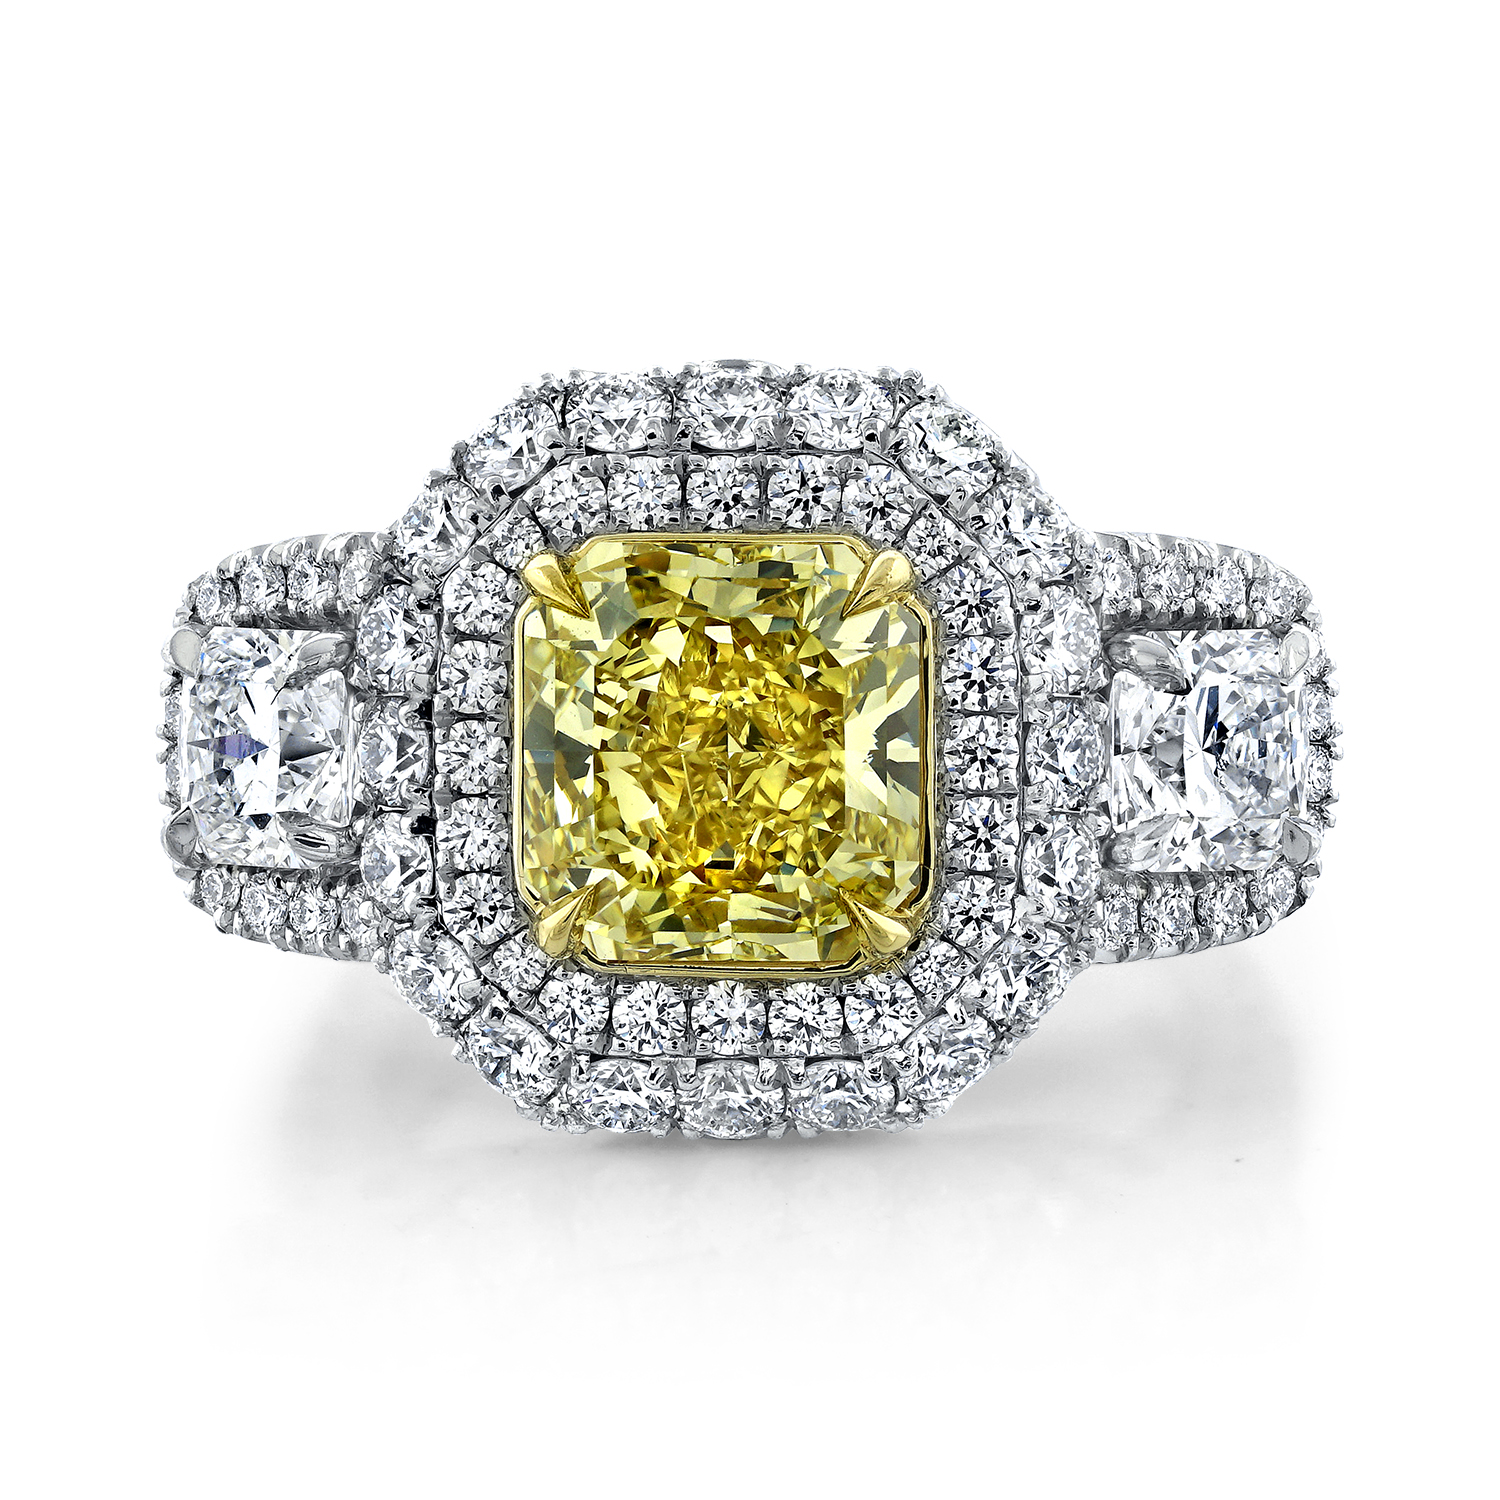 ring, gold, diamonds, yellow diamond, jewelry photography, beautiful ring